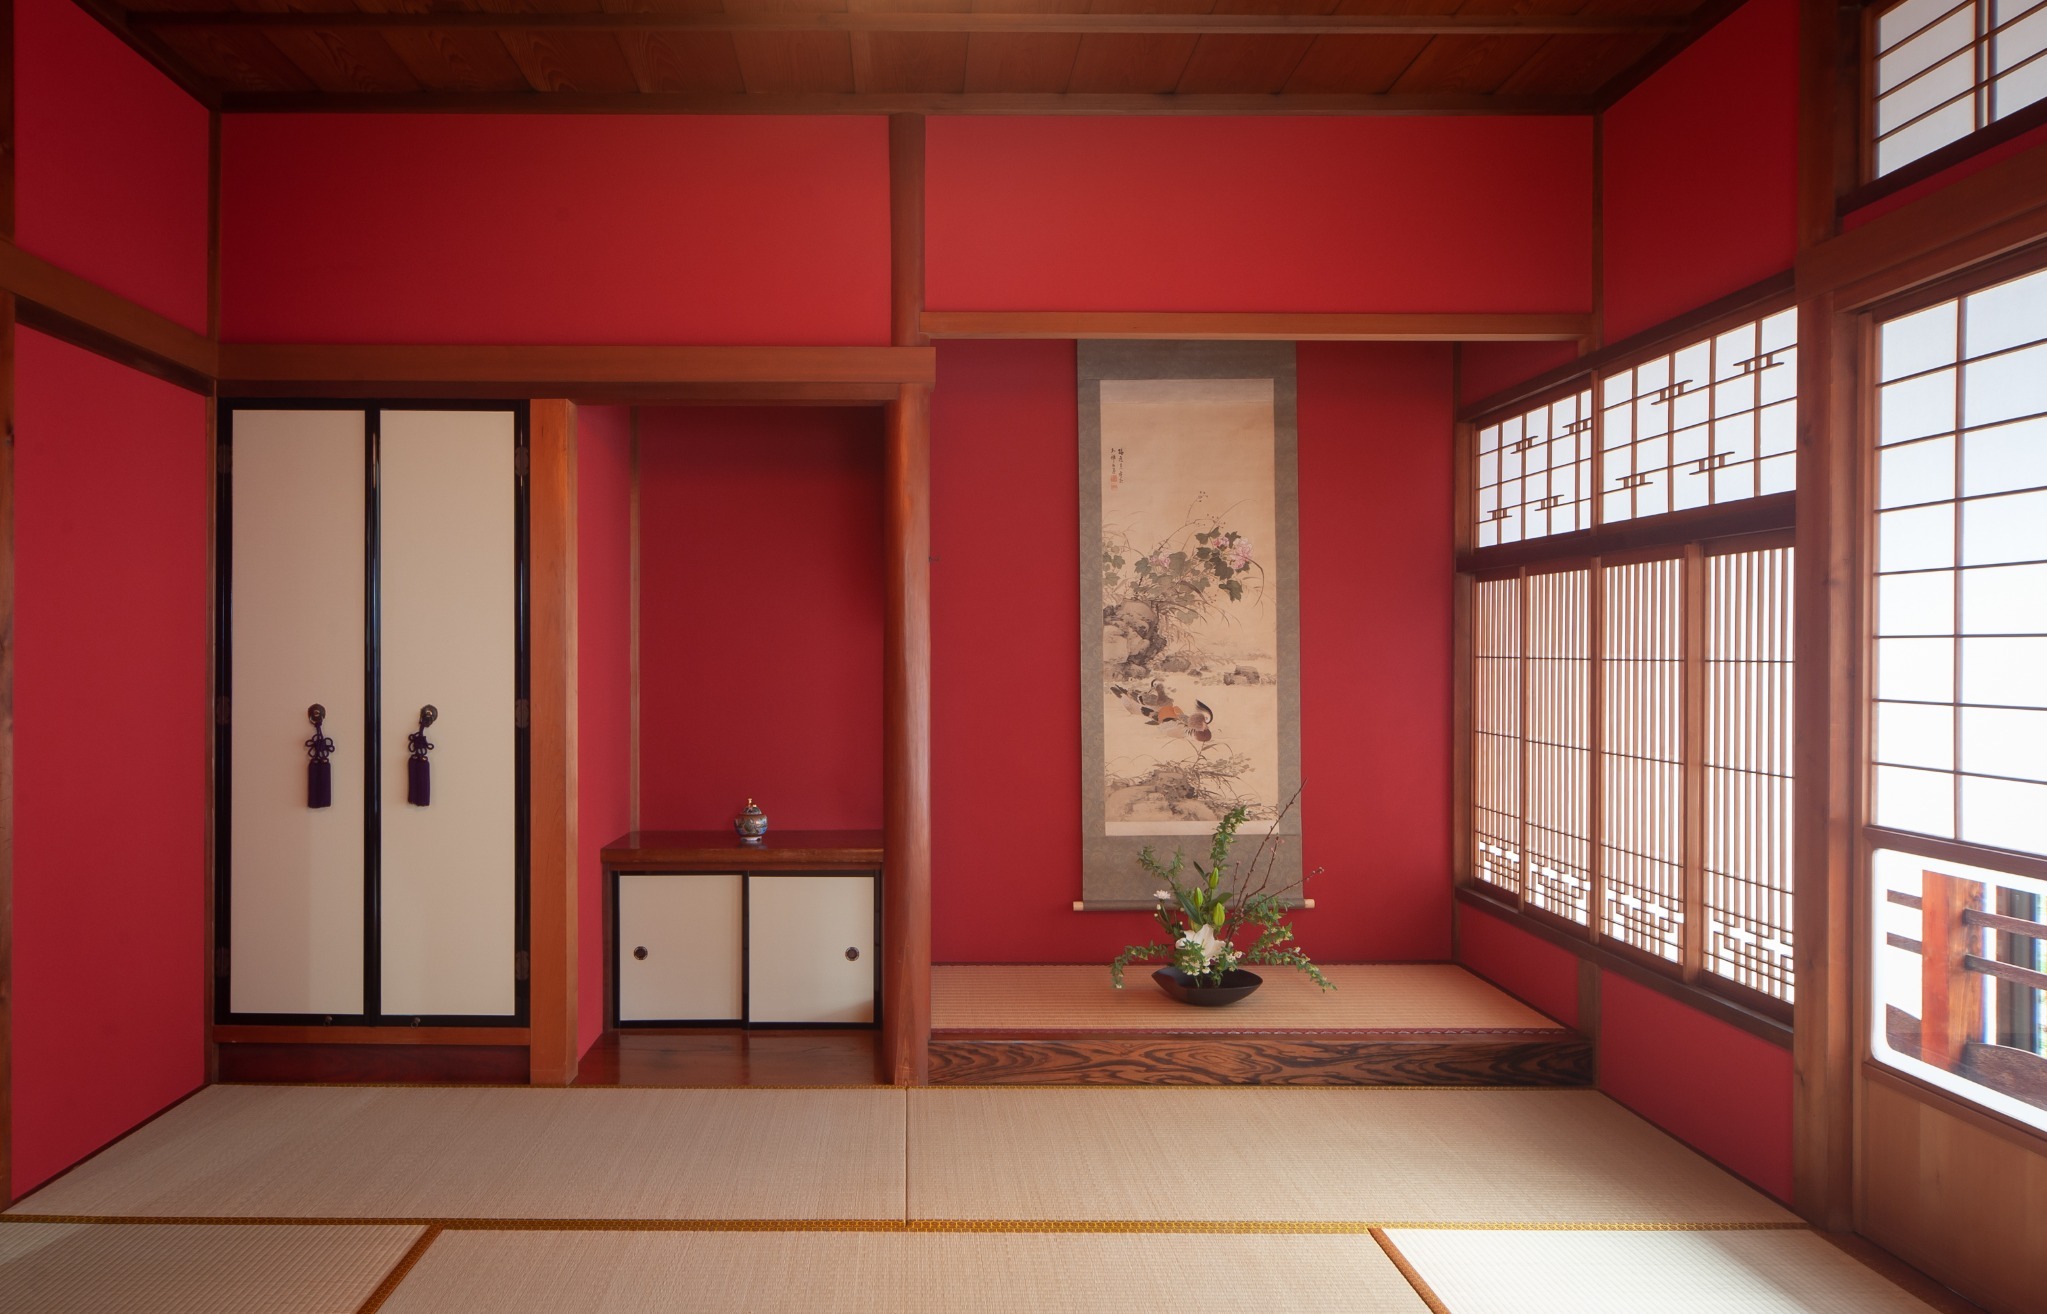 金沢の中心片町 坪庭と和室が魅力の宿 ゆったり広々140m2(寝室5部屋)